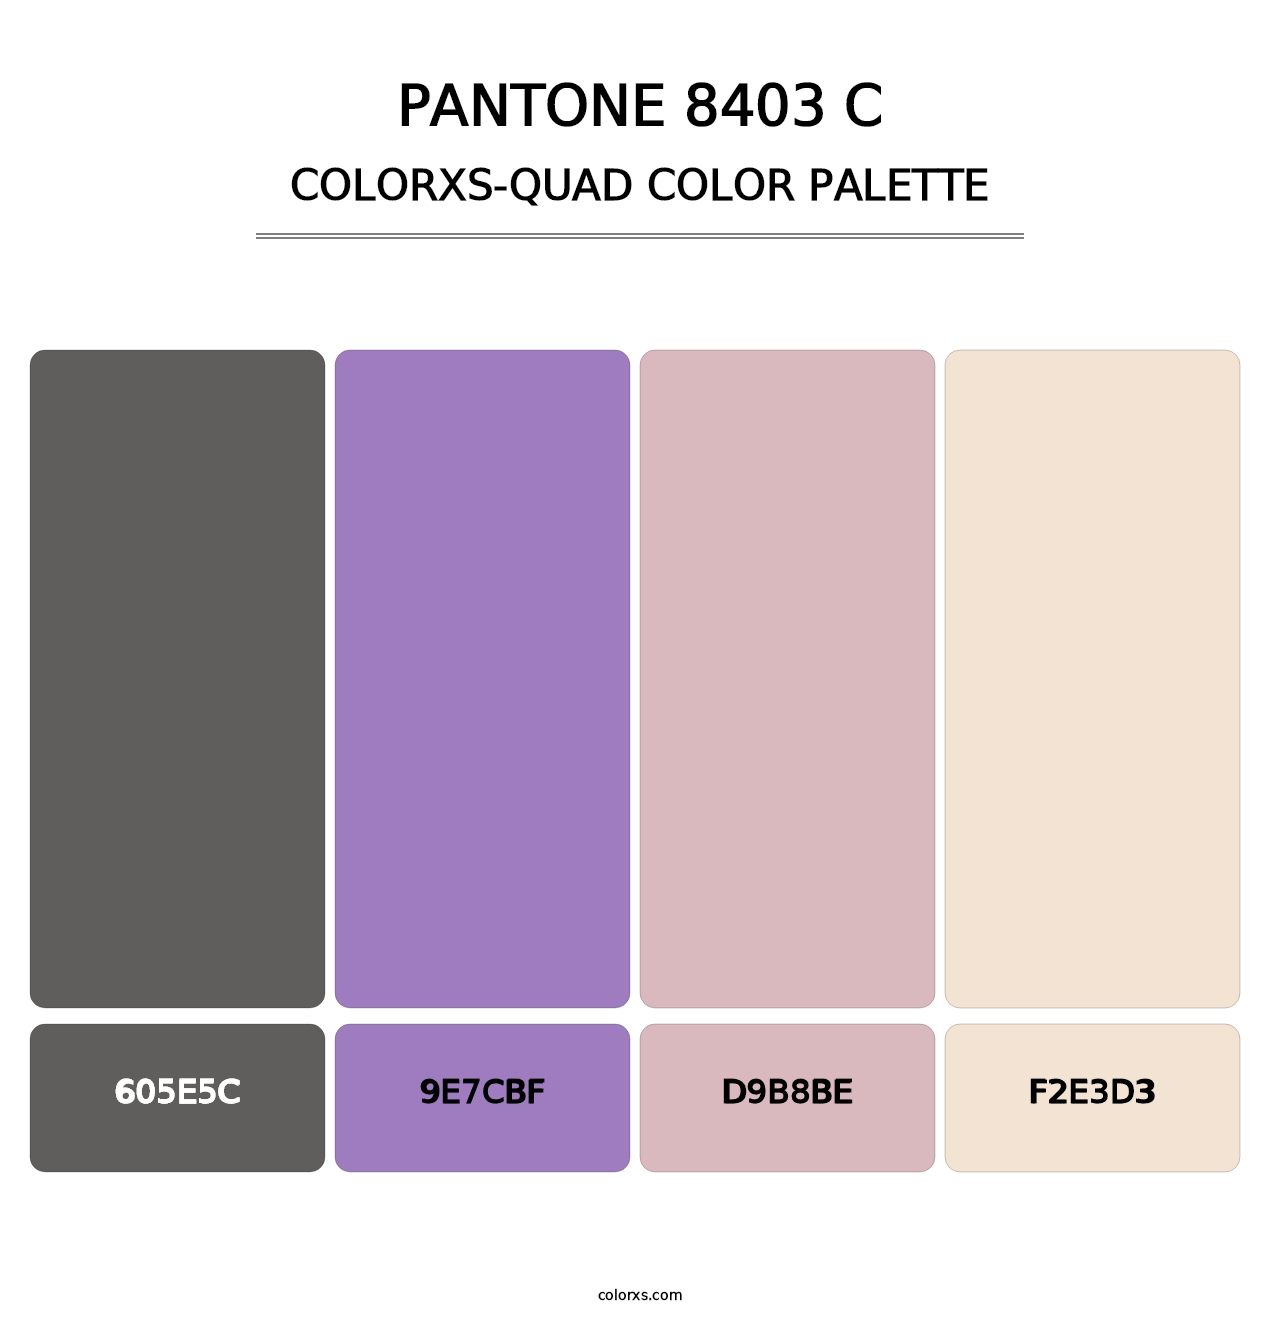 PANTONE 8403 C - Colorxs Quad Palette